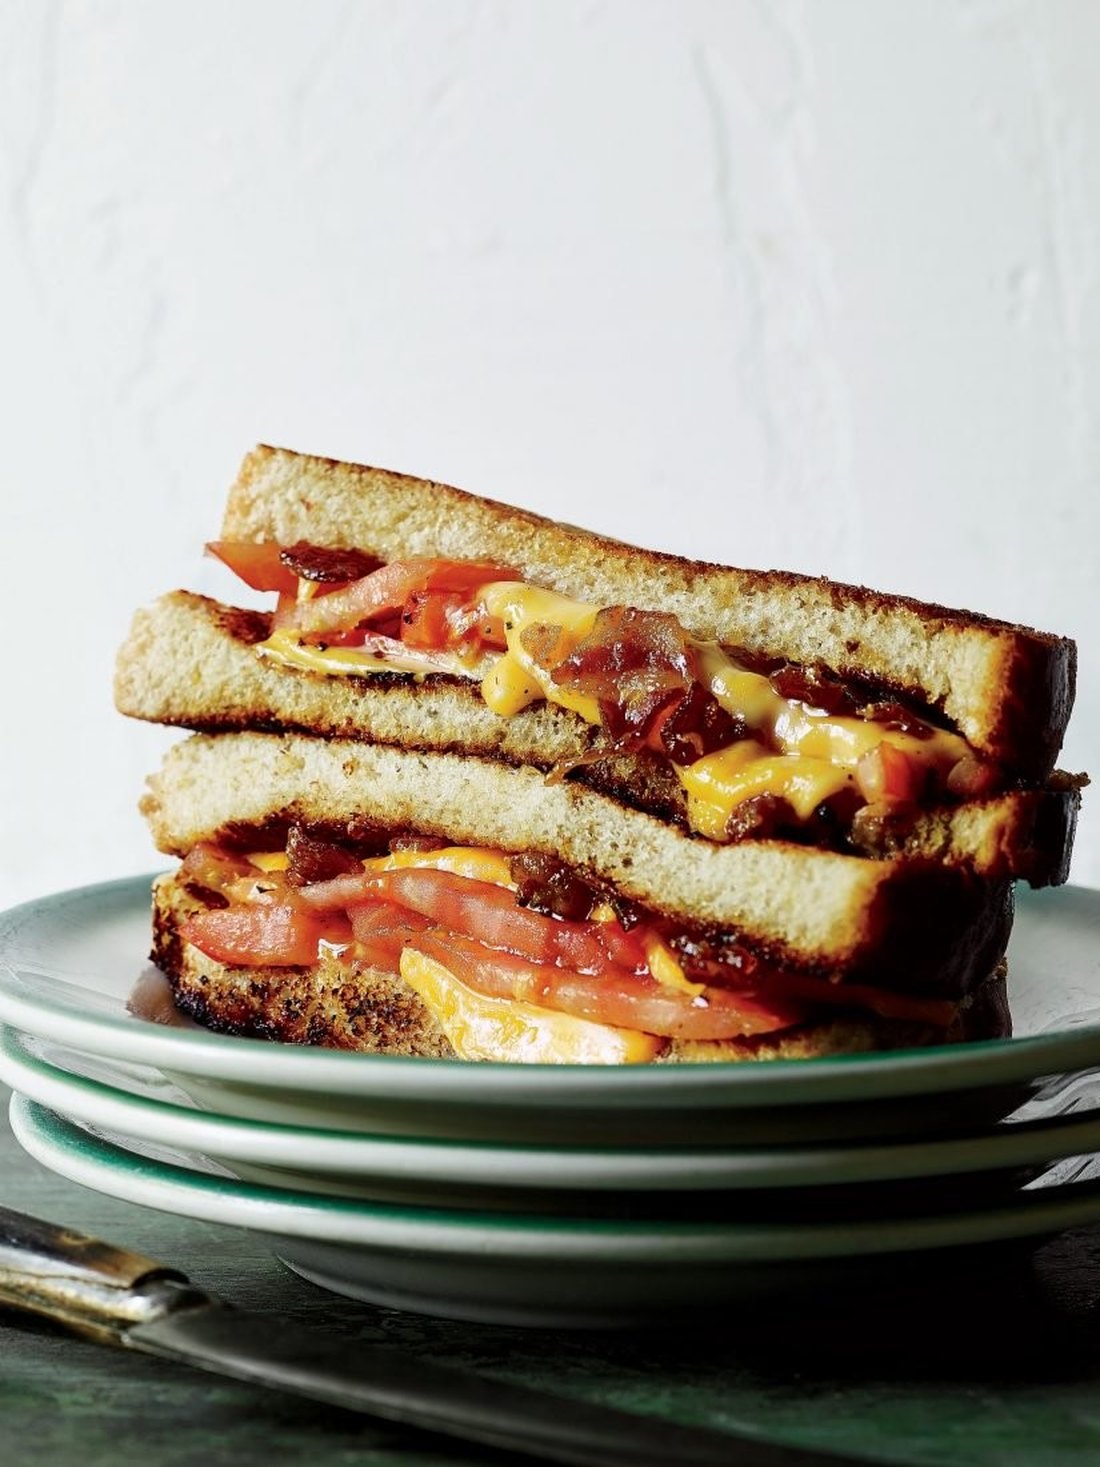 Αυτό είναι το πιο νόστιμο και εύκολο σάντουιτς που μπορείς να ετοιμάσεις!